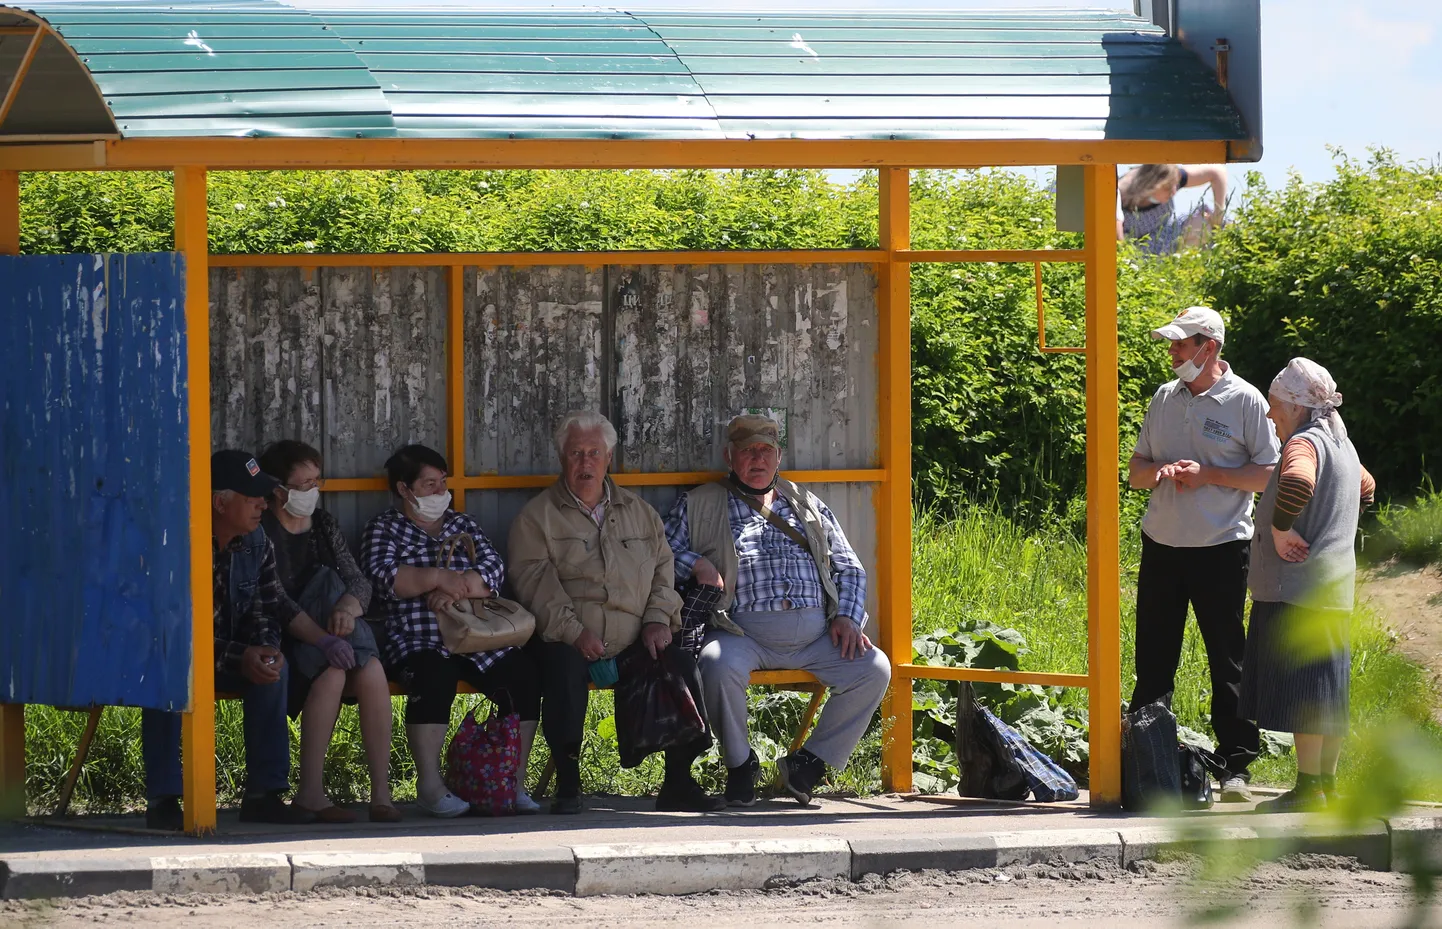 Inimesed pärast koroonapiirangute leevendumist Venemaal Ivanovo piirkonnas bussi ootamas. Foto on illustratiivne.